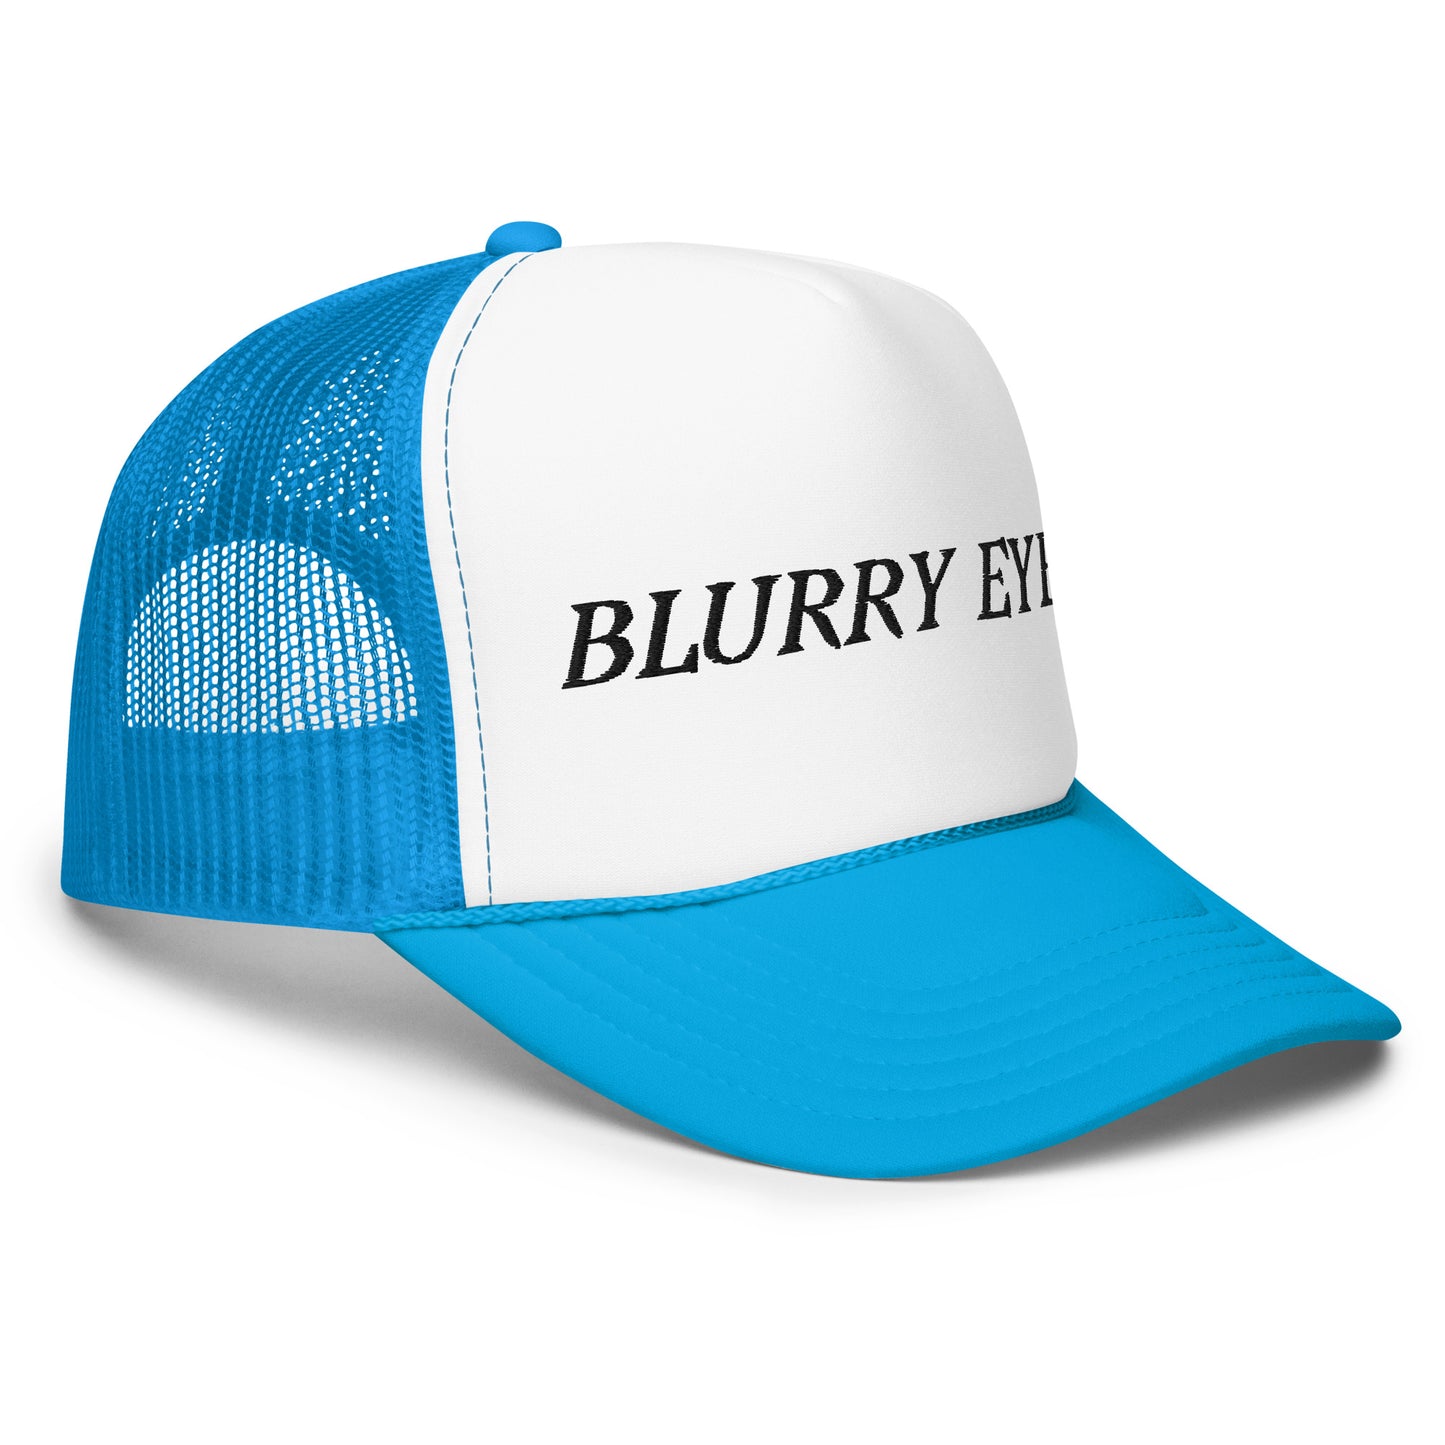 Blurry Eyes Foam Trucker Hat